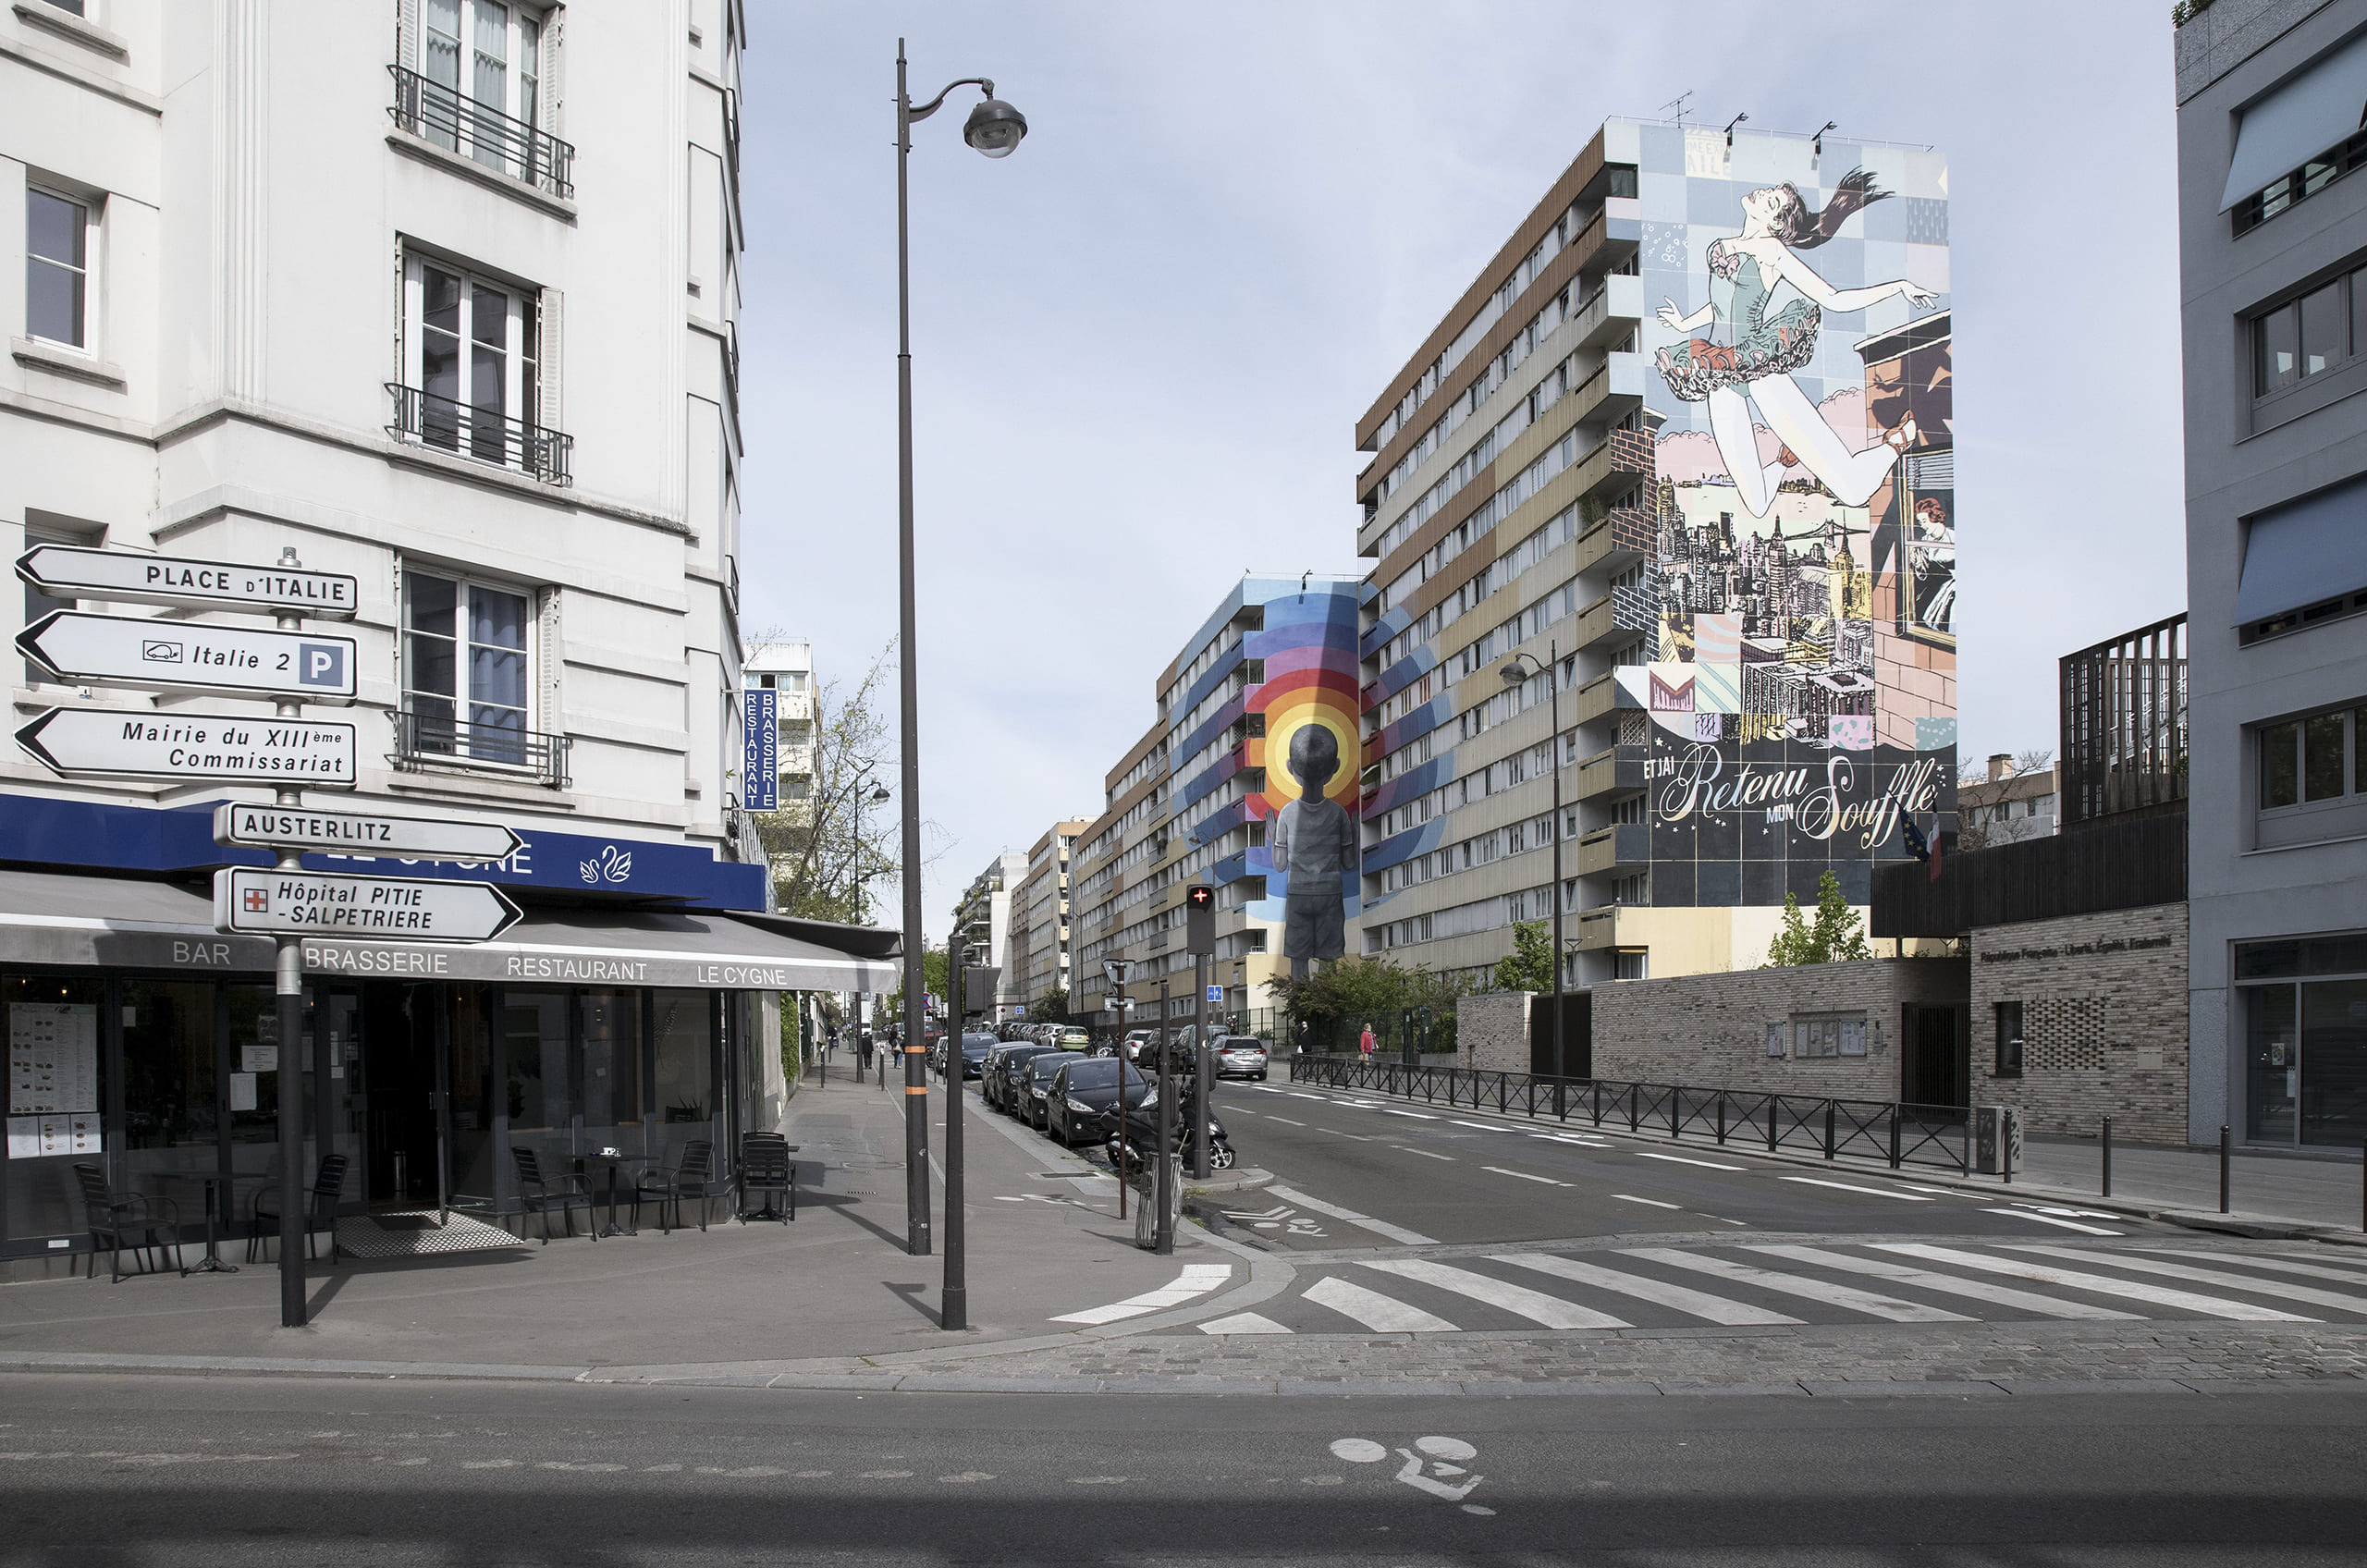 Viaggio metropolitano e di streetphotography a Parigi, solo ed esclusivamente dal punto di vista del fotografo con Gilberto Maltinti. Tra streetart e architetture futuribili, nel XIII E XIV arrondissement, a la Villette, Belleville e Oberkampf.